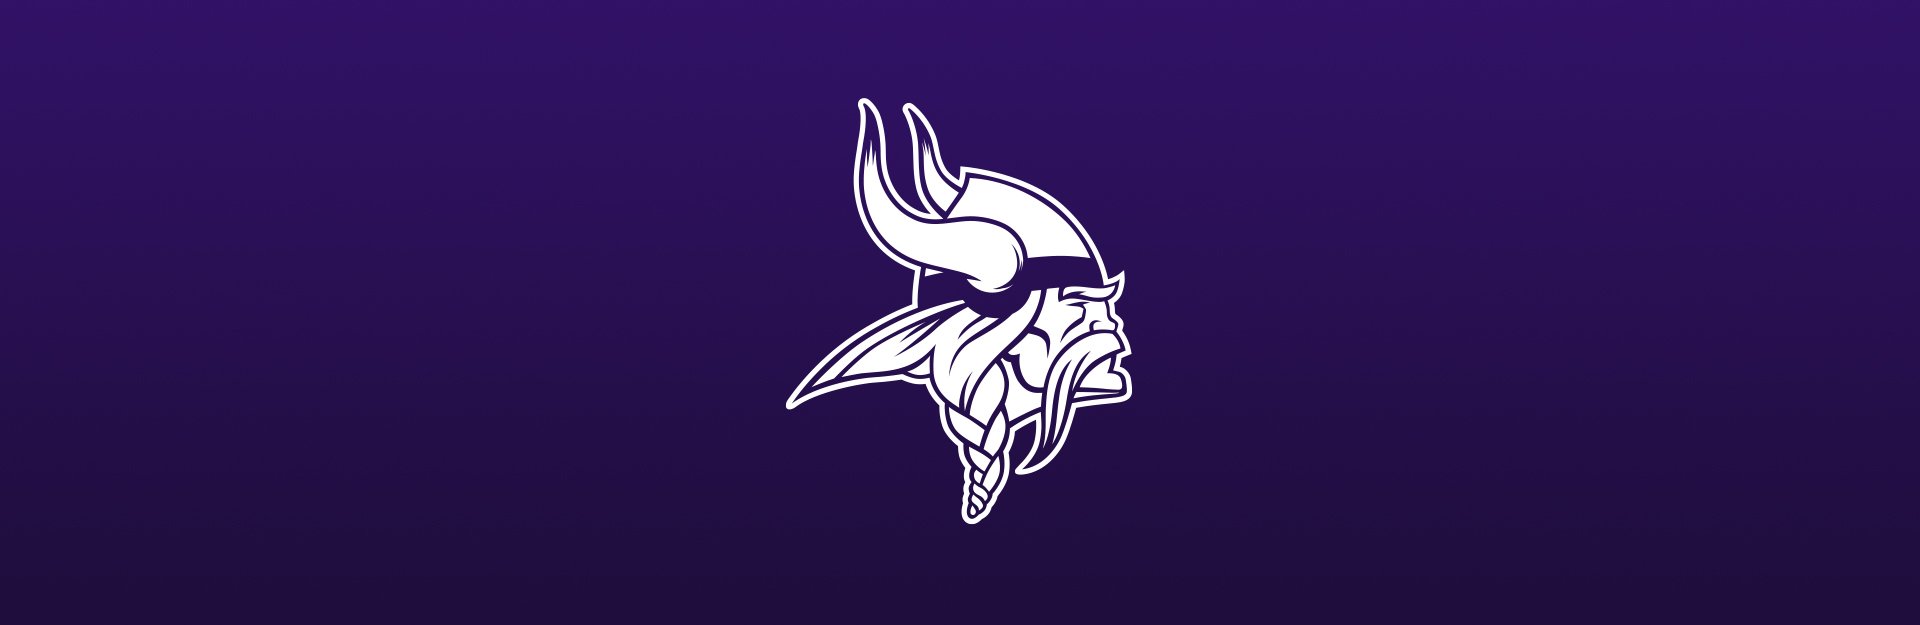 Minnesota Vikings logo on purple background